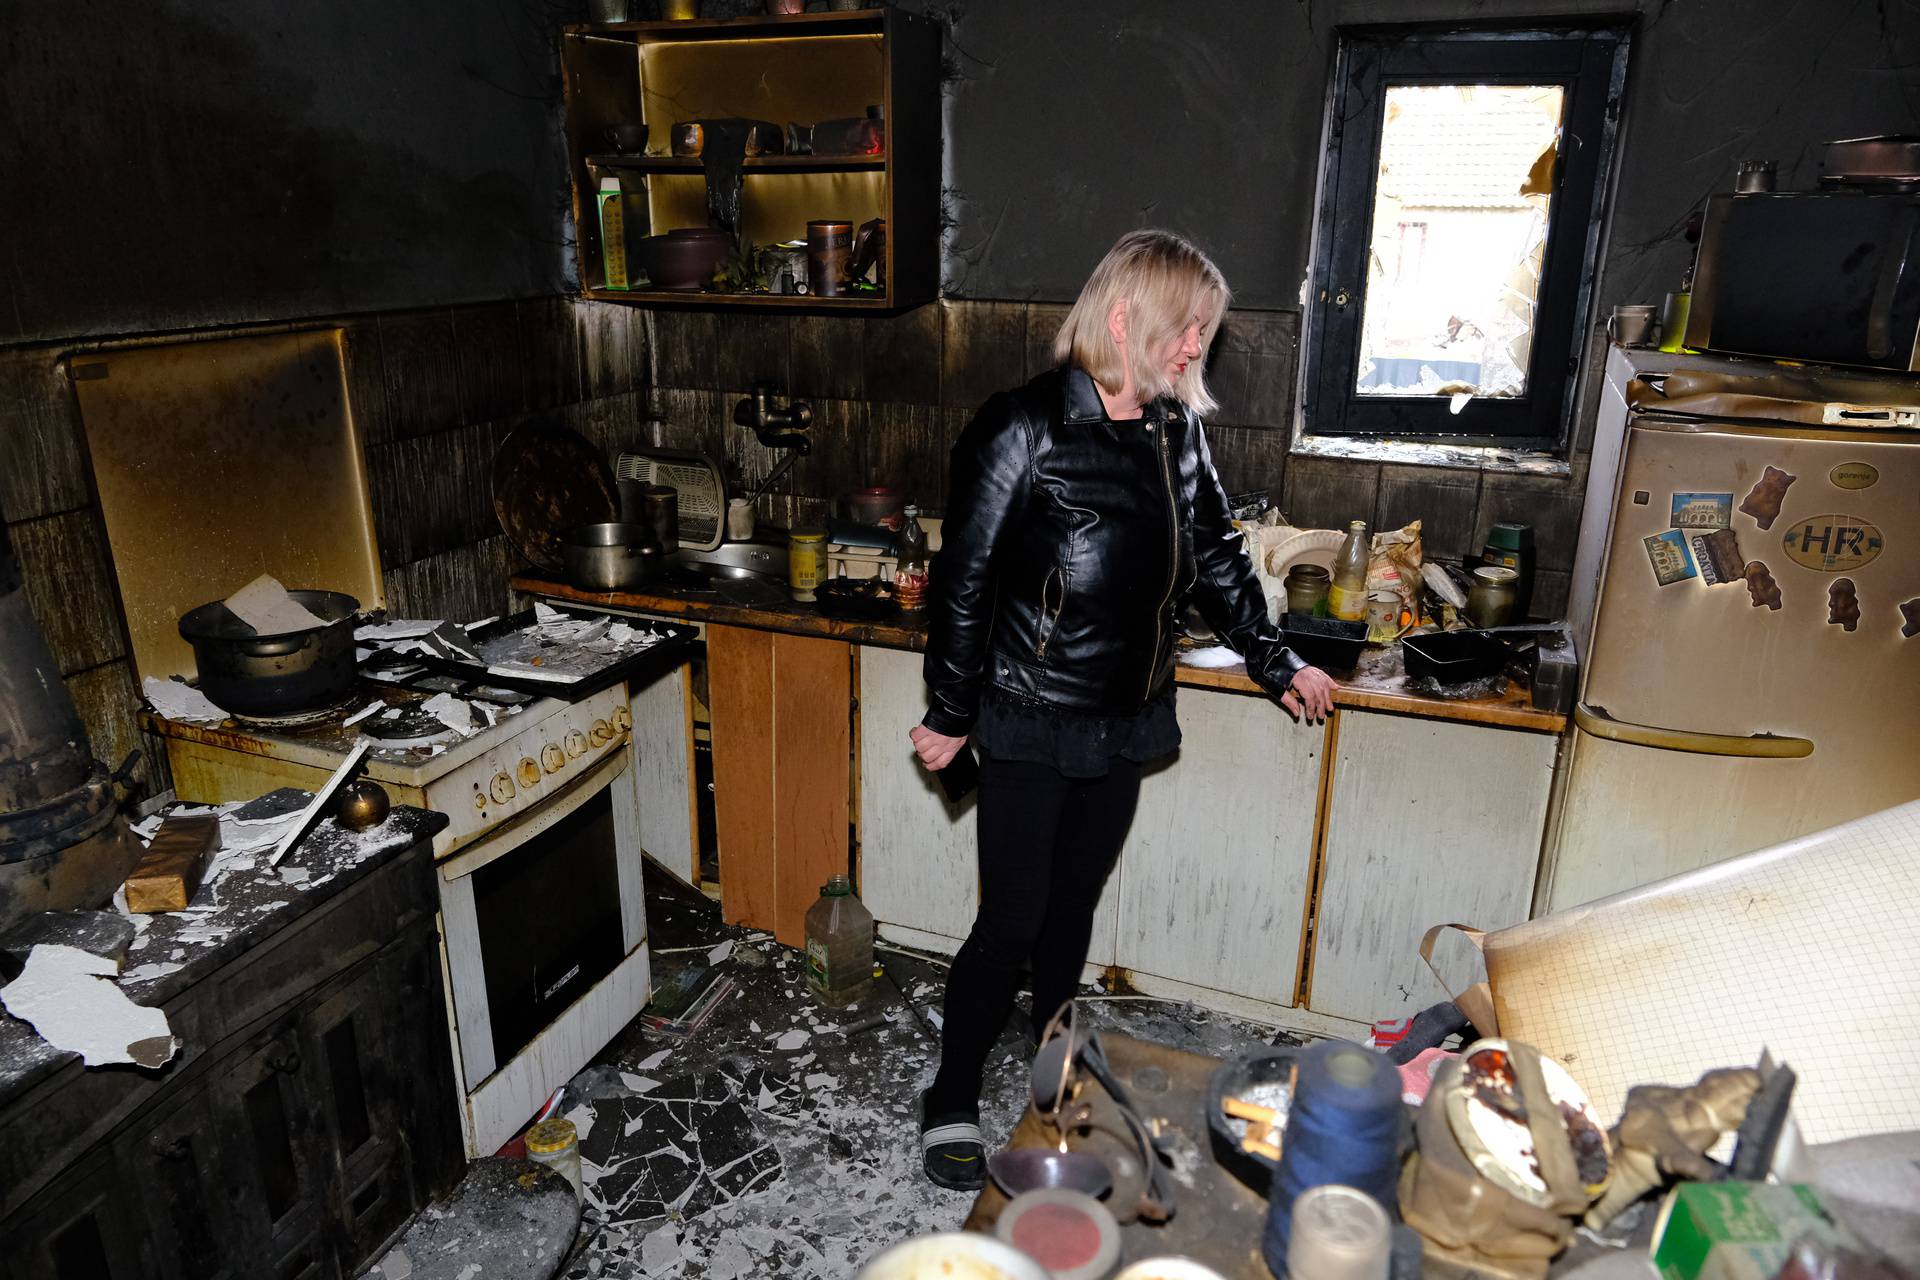 Kuća im je prvo sasvim razorena u potresu, sad je izgorjela: 'Krik nas je probudio usred noći...'